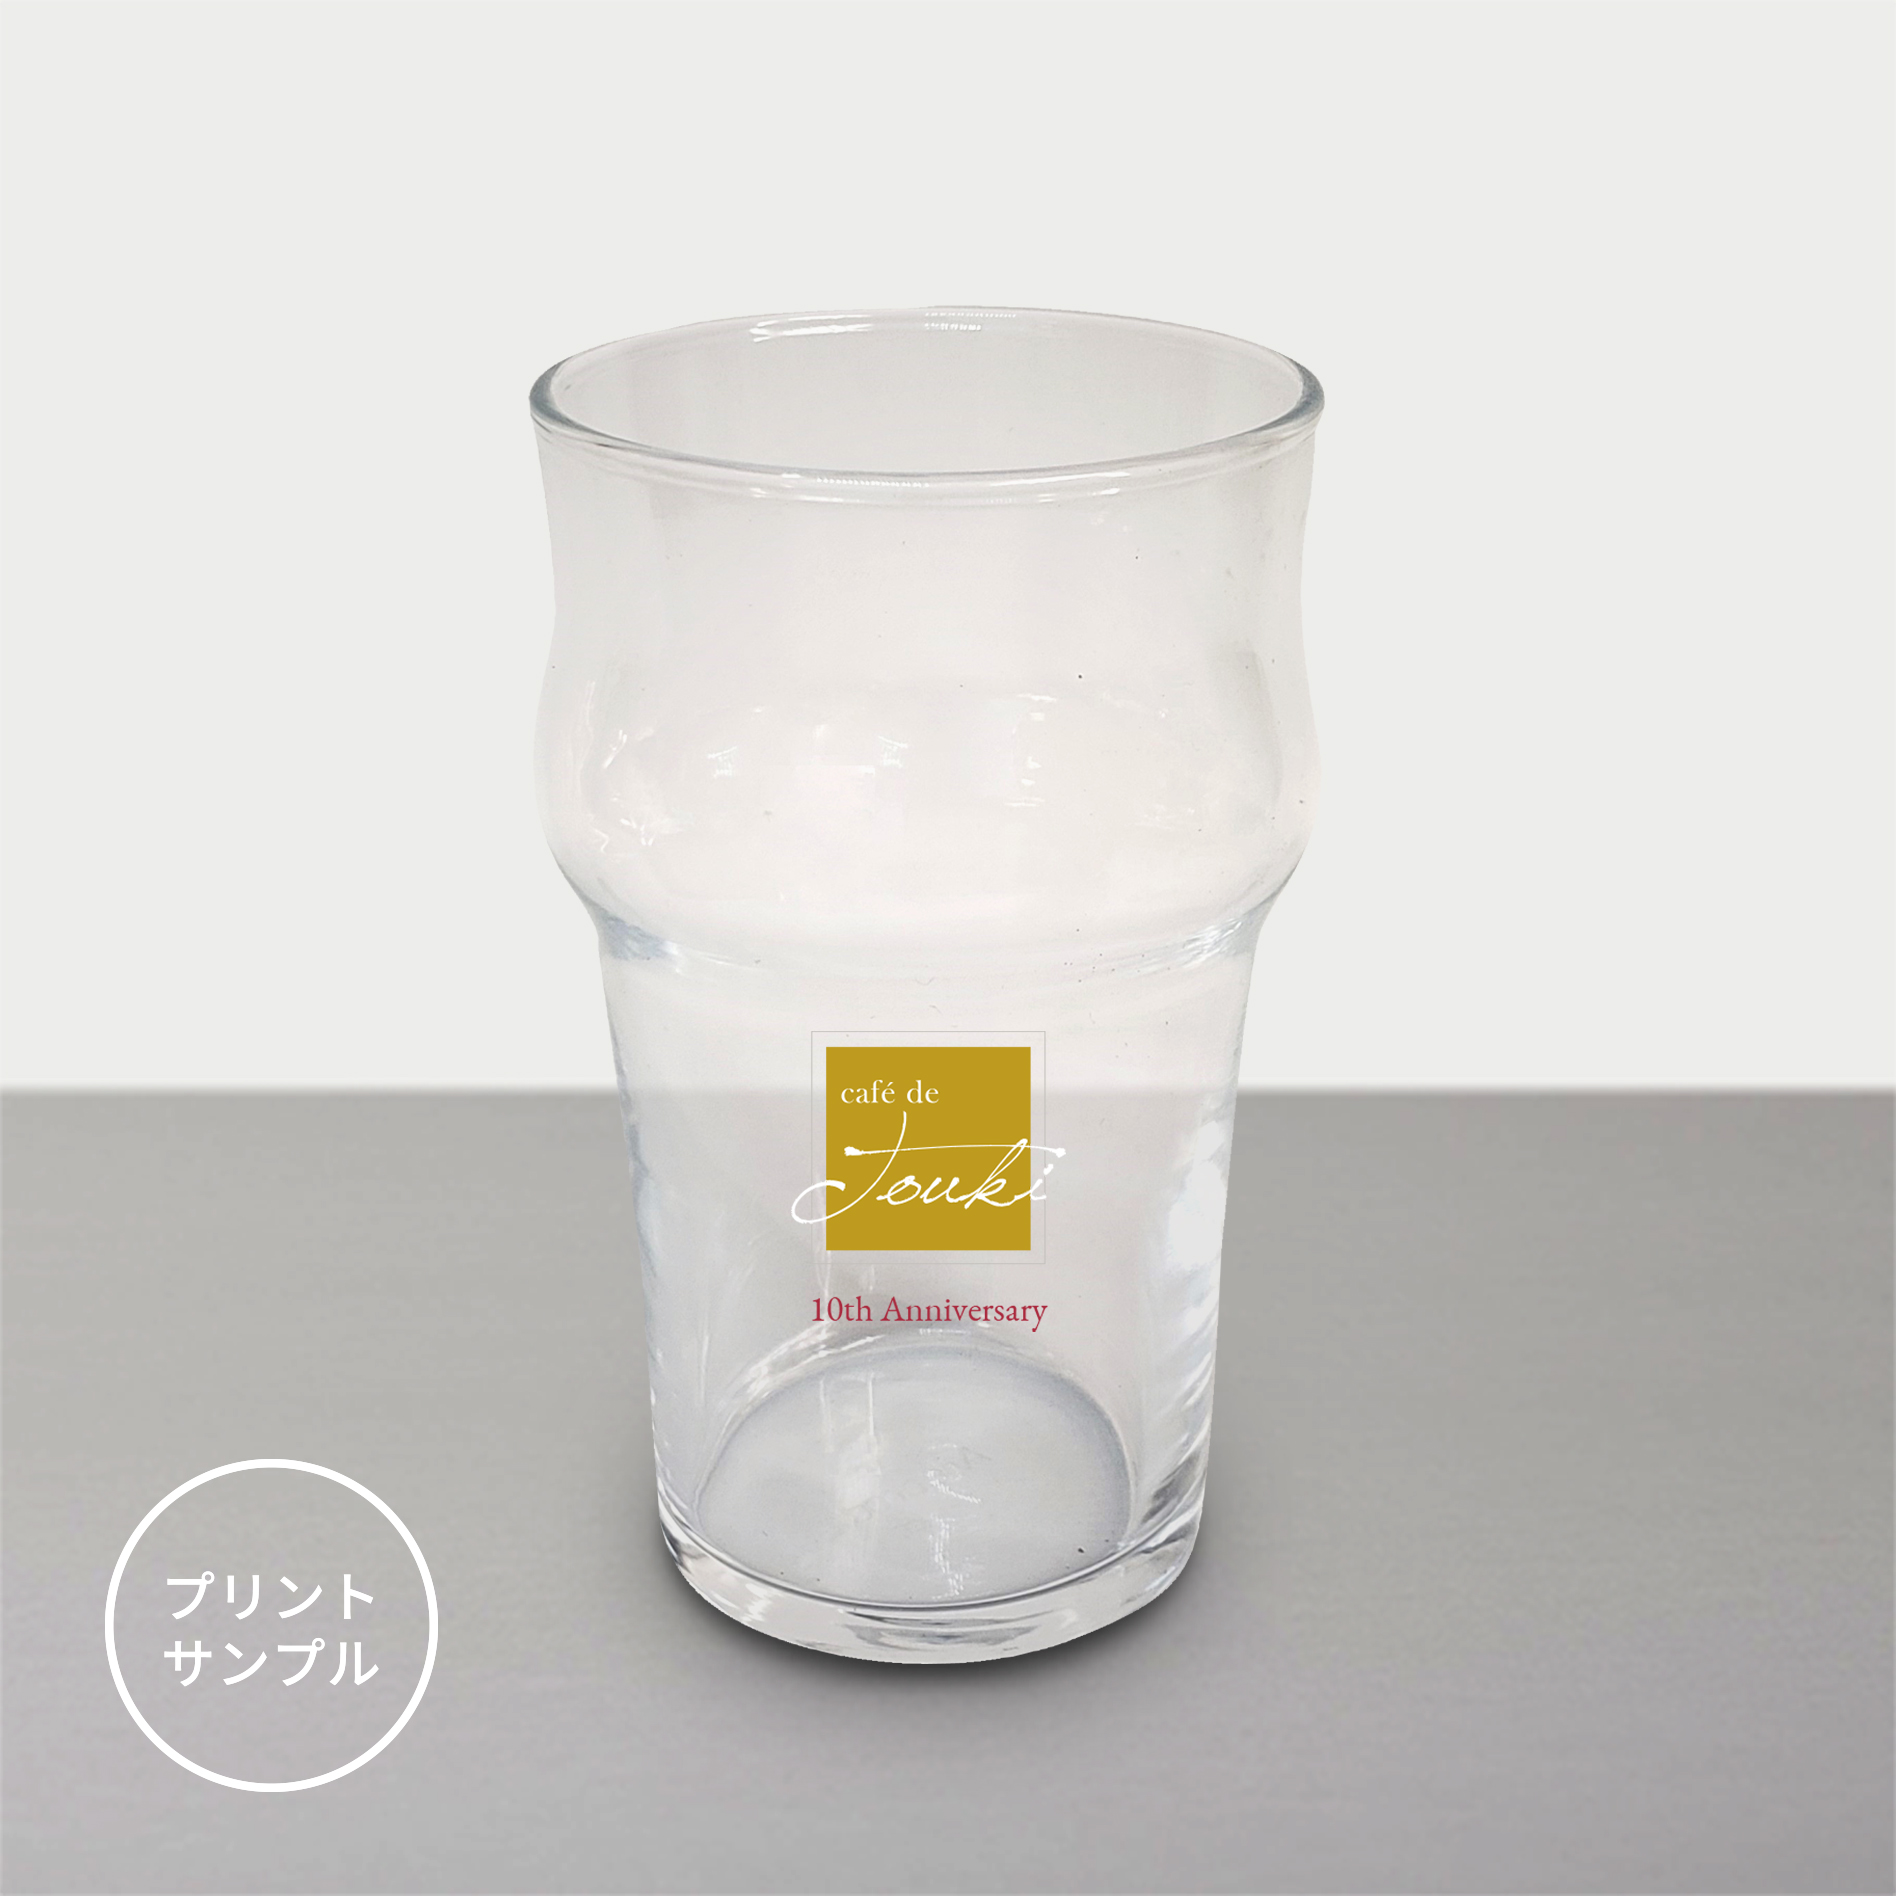 ノニックハーフパイントグラス | PROFESSIONAL | オリジナルマグカップ・ノベルティのOEM制作ならセトセラミック